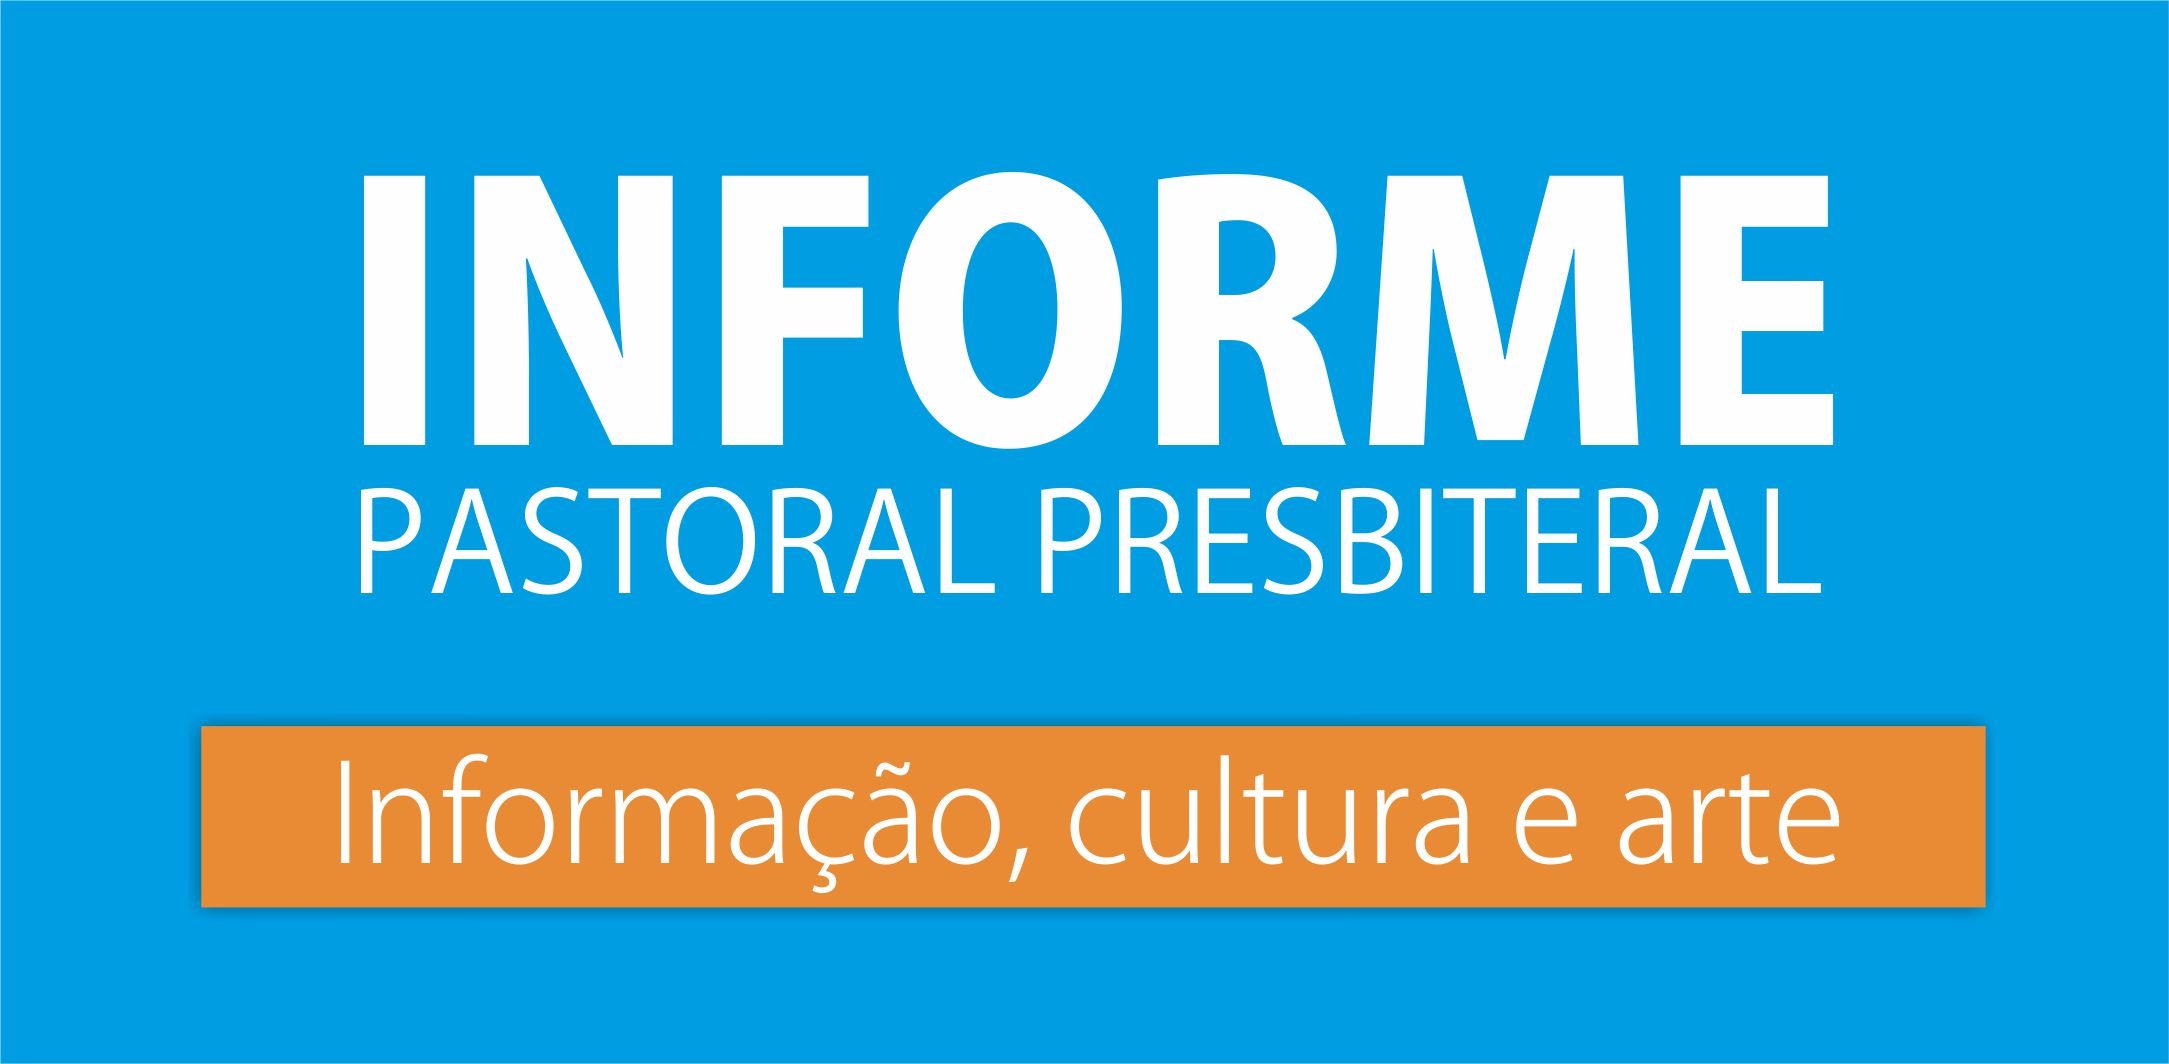 27/04/2018 – Informe Pastoral Presbiteral – Informação, Cultura e Arte